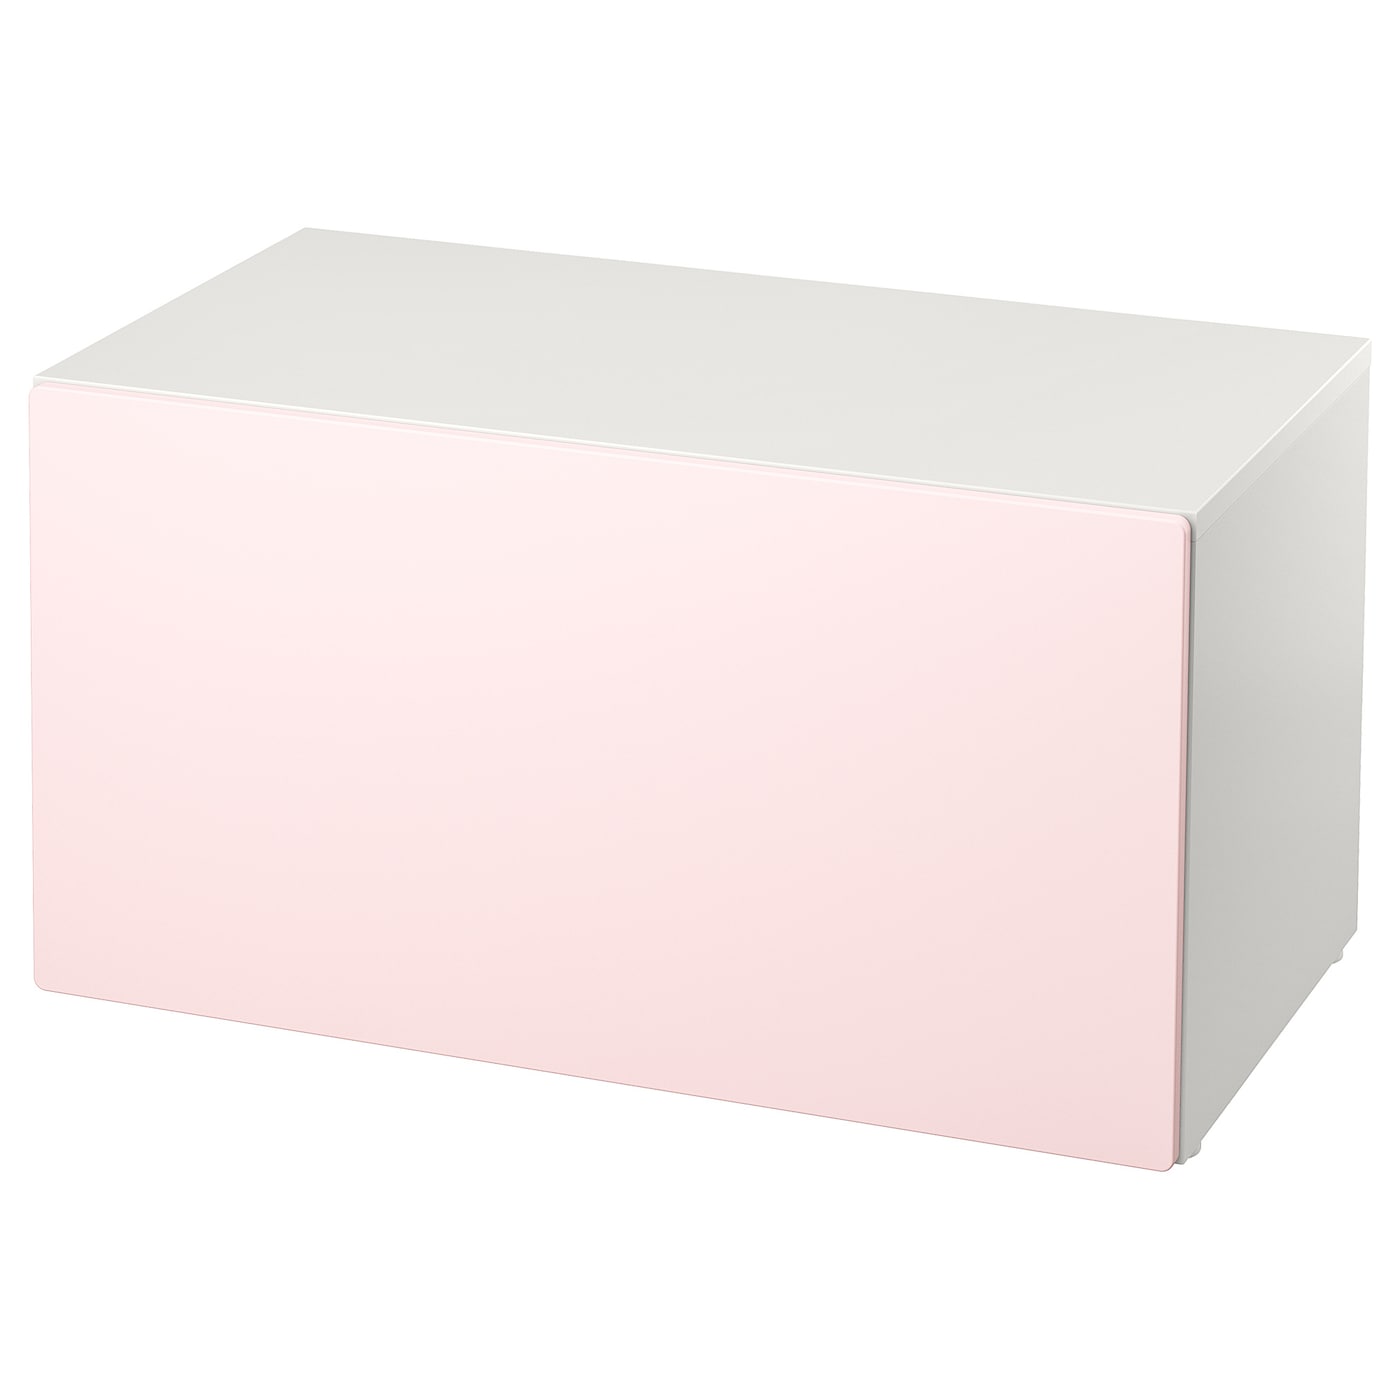 Шкаф детский - IKEA SMÅSTAD/SMASTAD, 90x50x48 см, белый/розовый, СМОСТАД ИКЕА